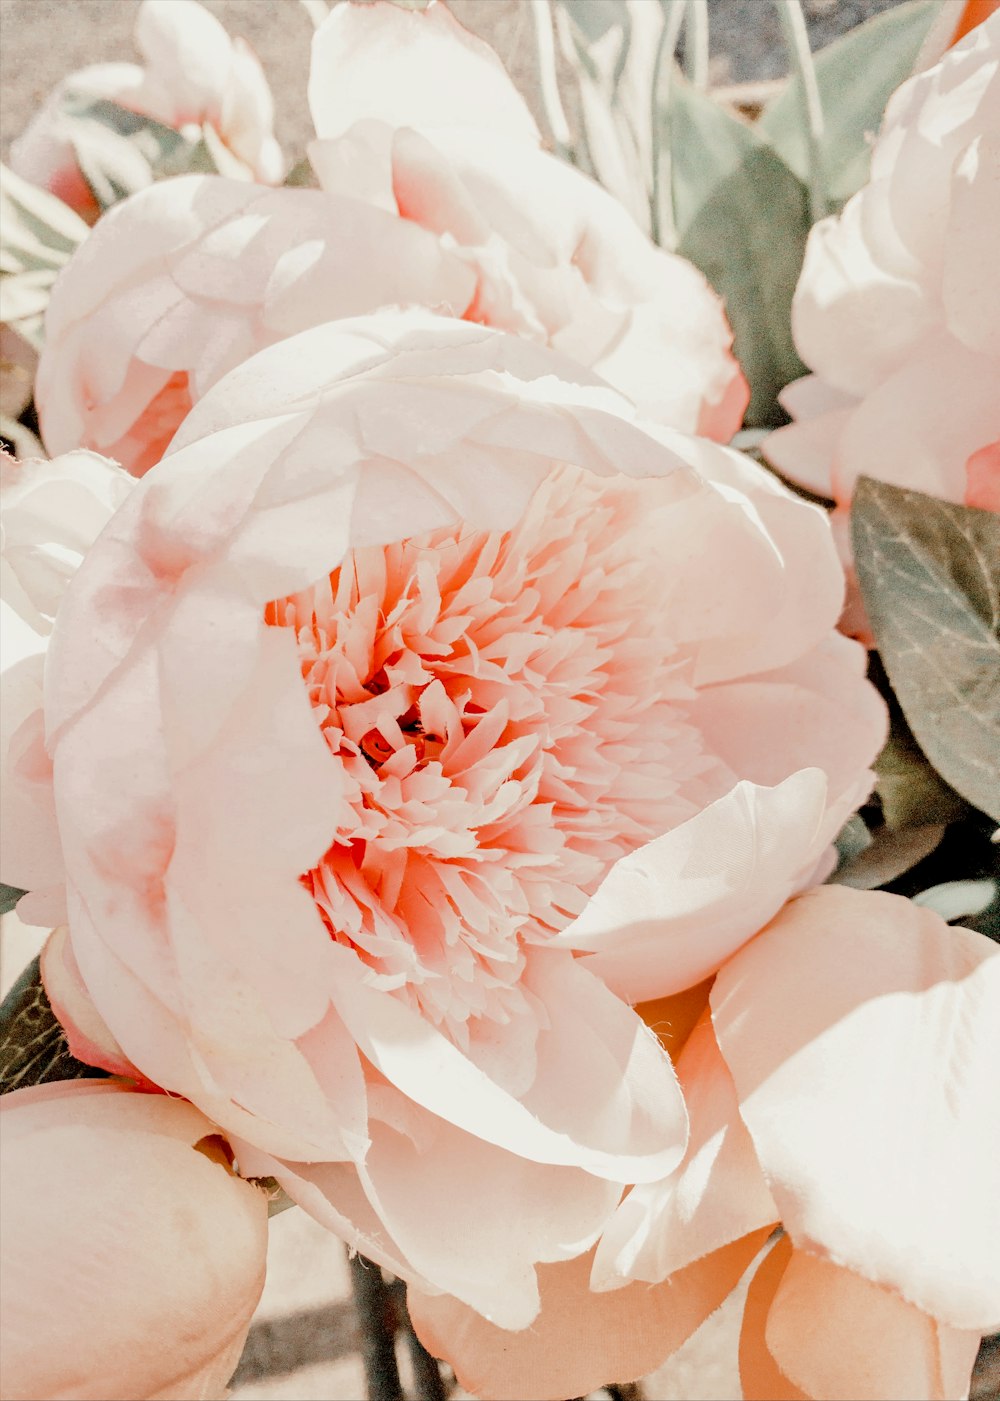 クローズアップ写真のピンクと白の花